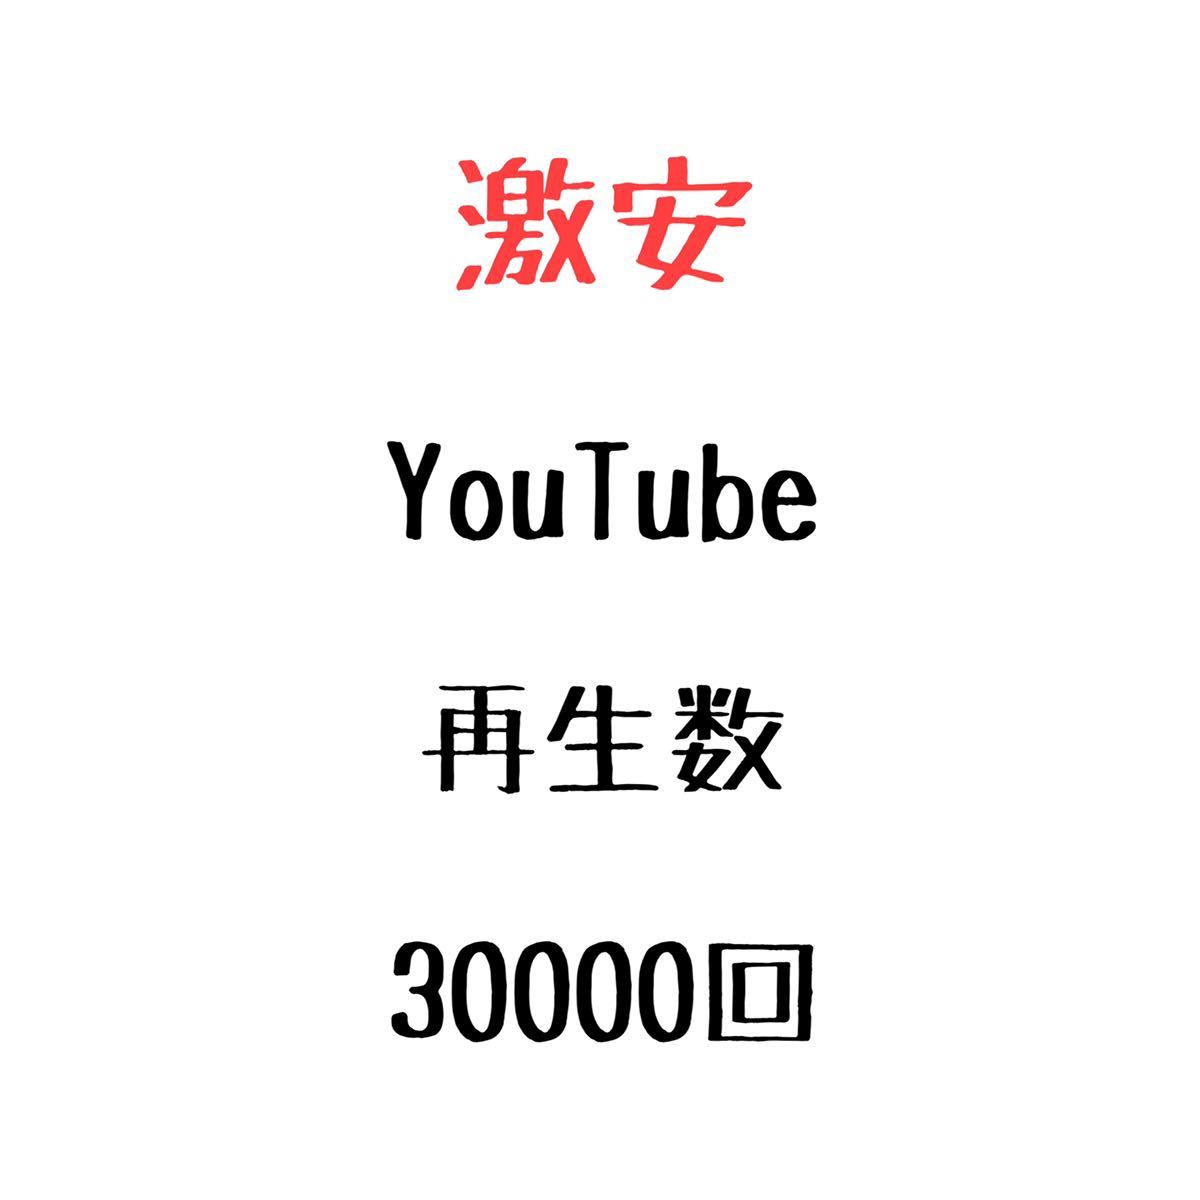 2022特集 YouTube ユーチューブ 増加 3万回 視聴回数 動画再生数 再生数 ユーチューブ YouTube 30000回 再生回数 WWW/ホームページ作成